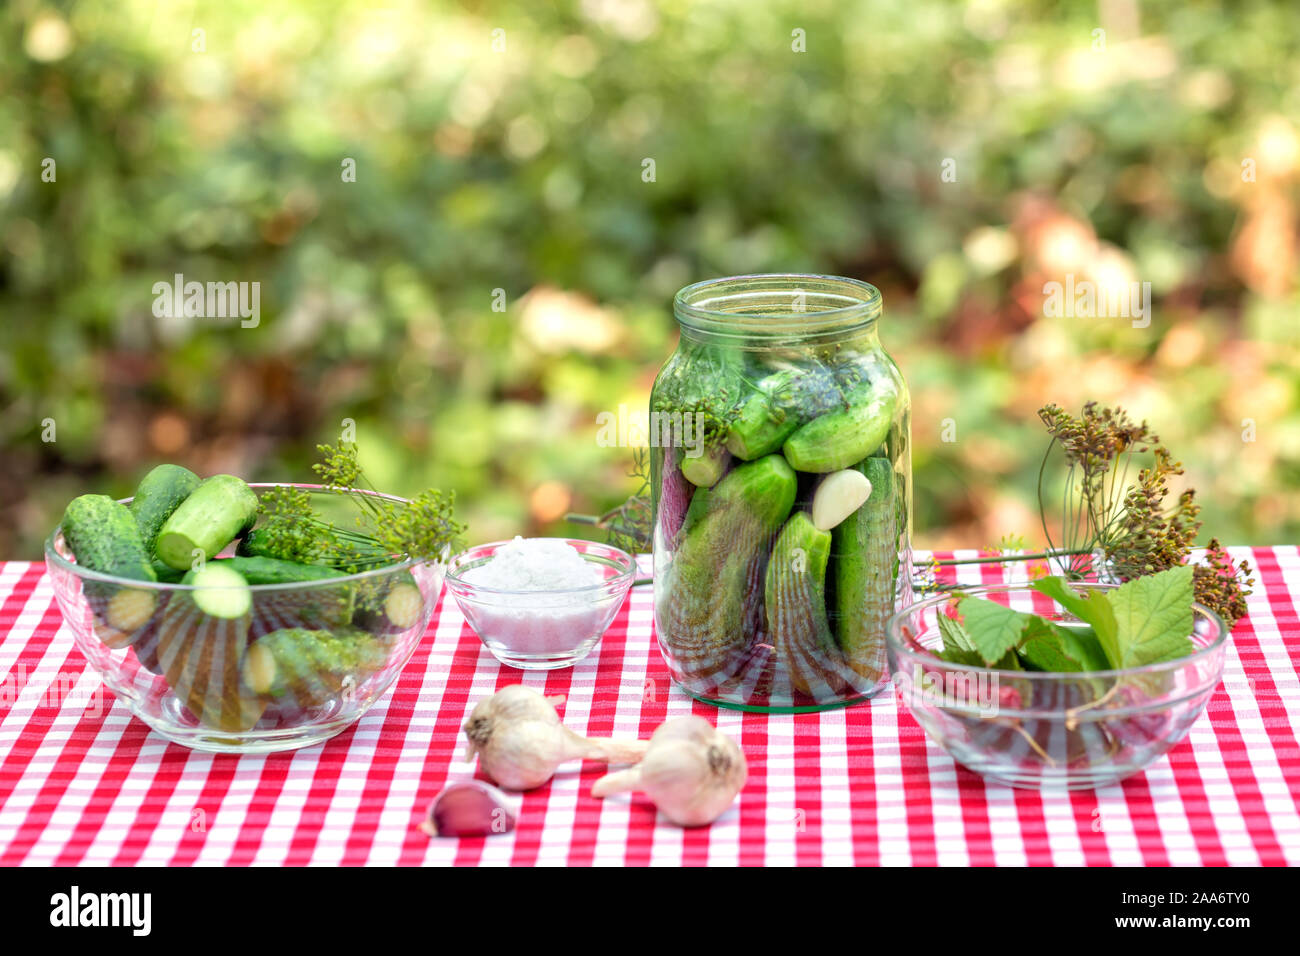 Gurken und Gewürze für Bewahrung. Gewürz Knoblauch und Gurken in einem Glas auf eine Rote karierte Tischdecke. Natürlichen grünen Hintergrund Stockfoto